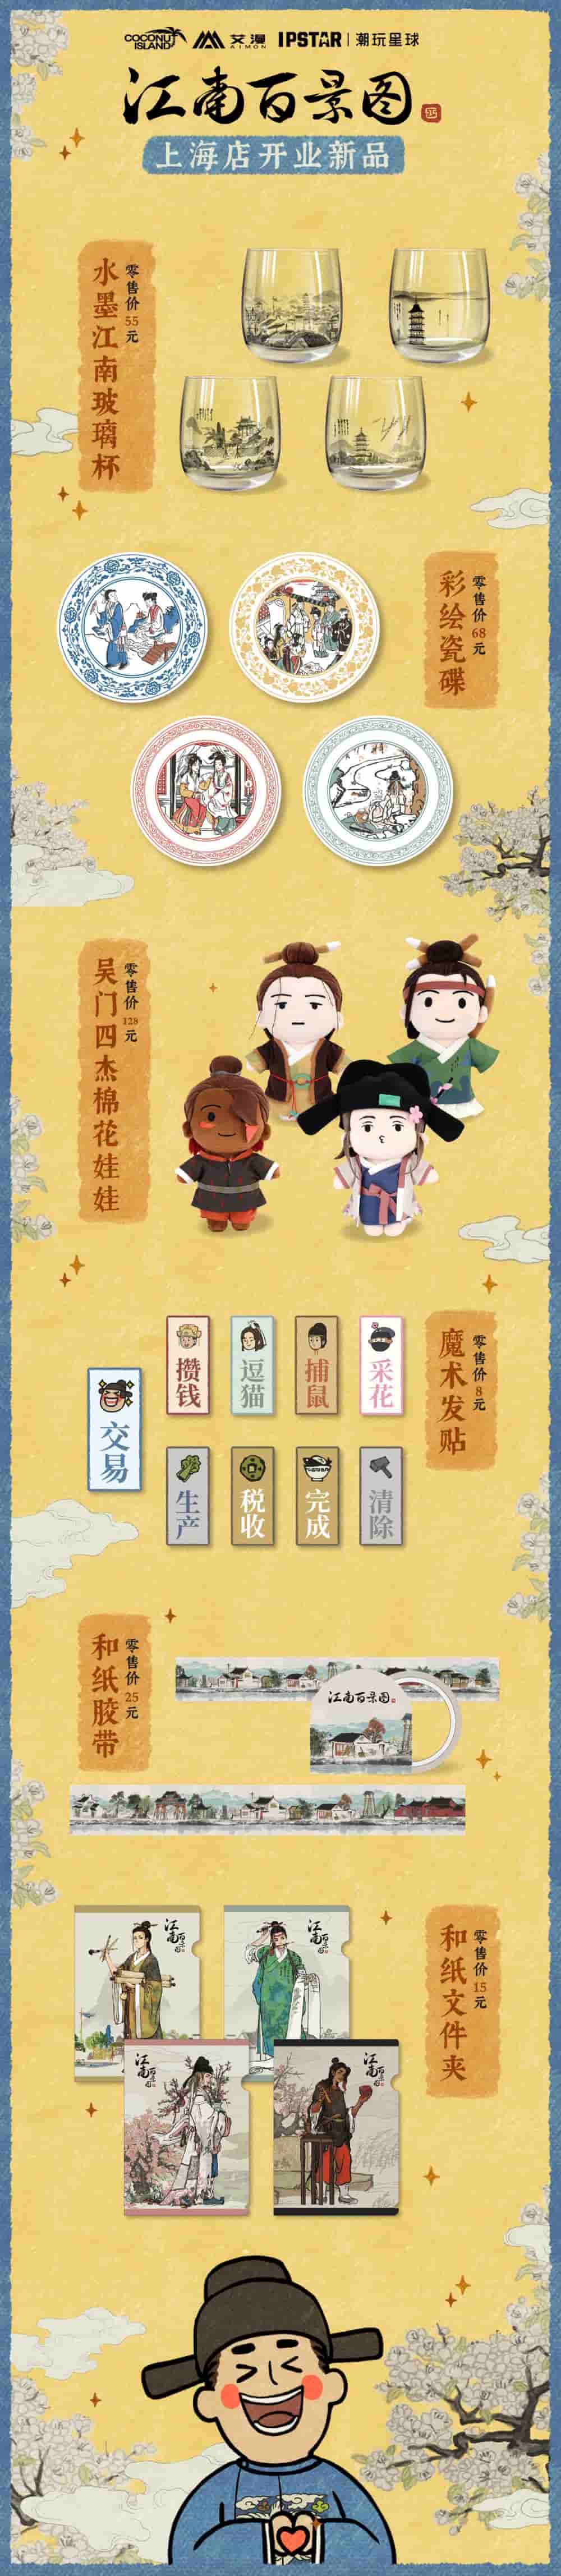 《江南百景图》授权主题餐饮店5月1日上海开业！活动情报全公开